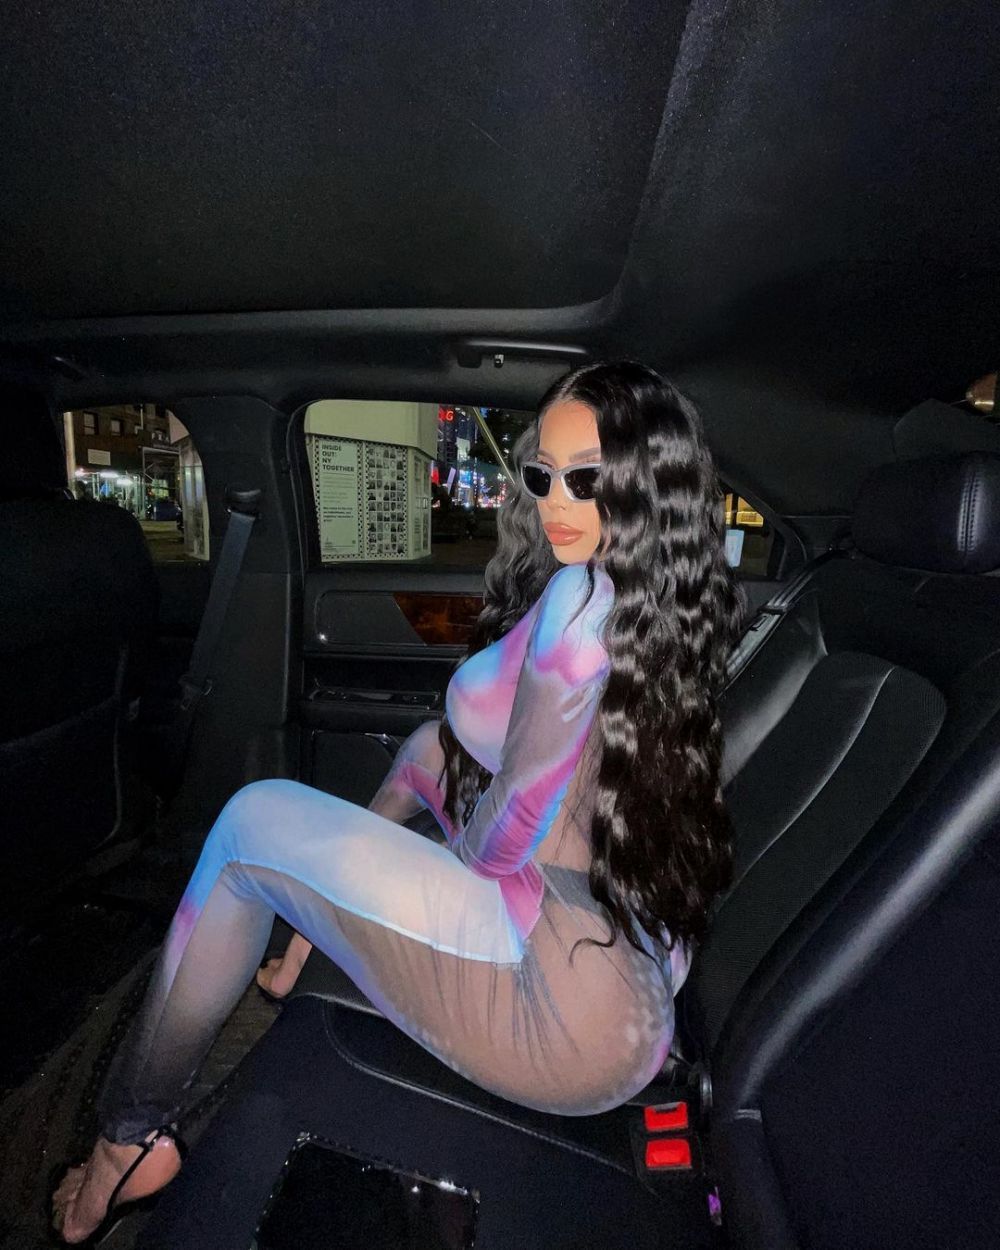 O columbiană sexy face furori cu formele sale pe Instagram! Valeria e sosia perfectă a lui Kim Kardashian